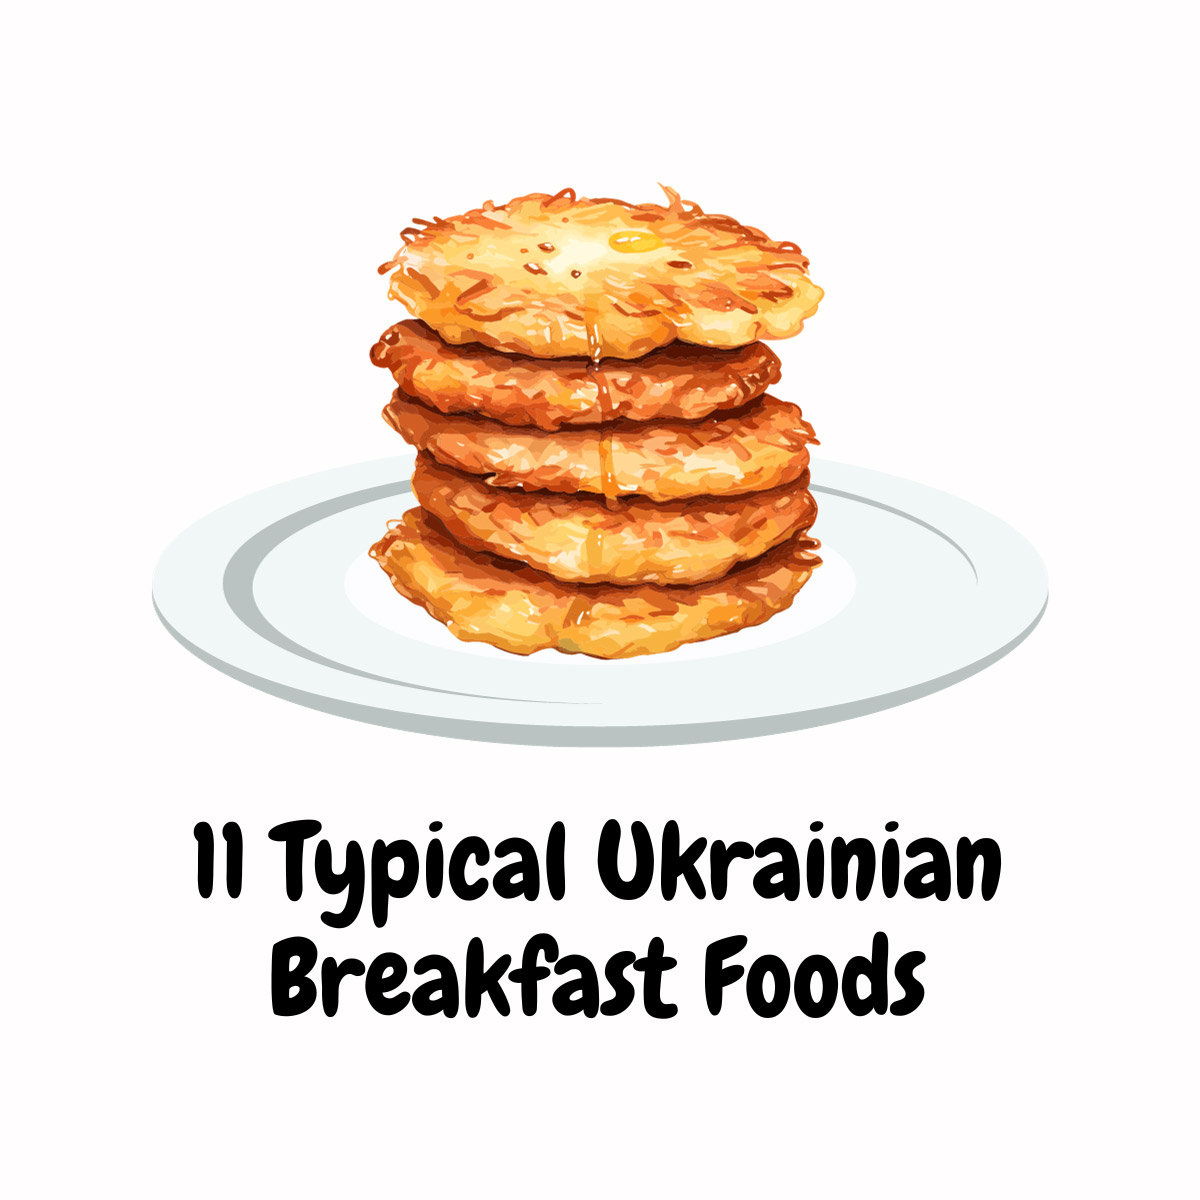 Ukrainian Breakfast Foods featured image | Girl Meets Food